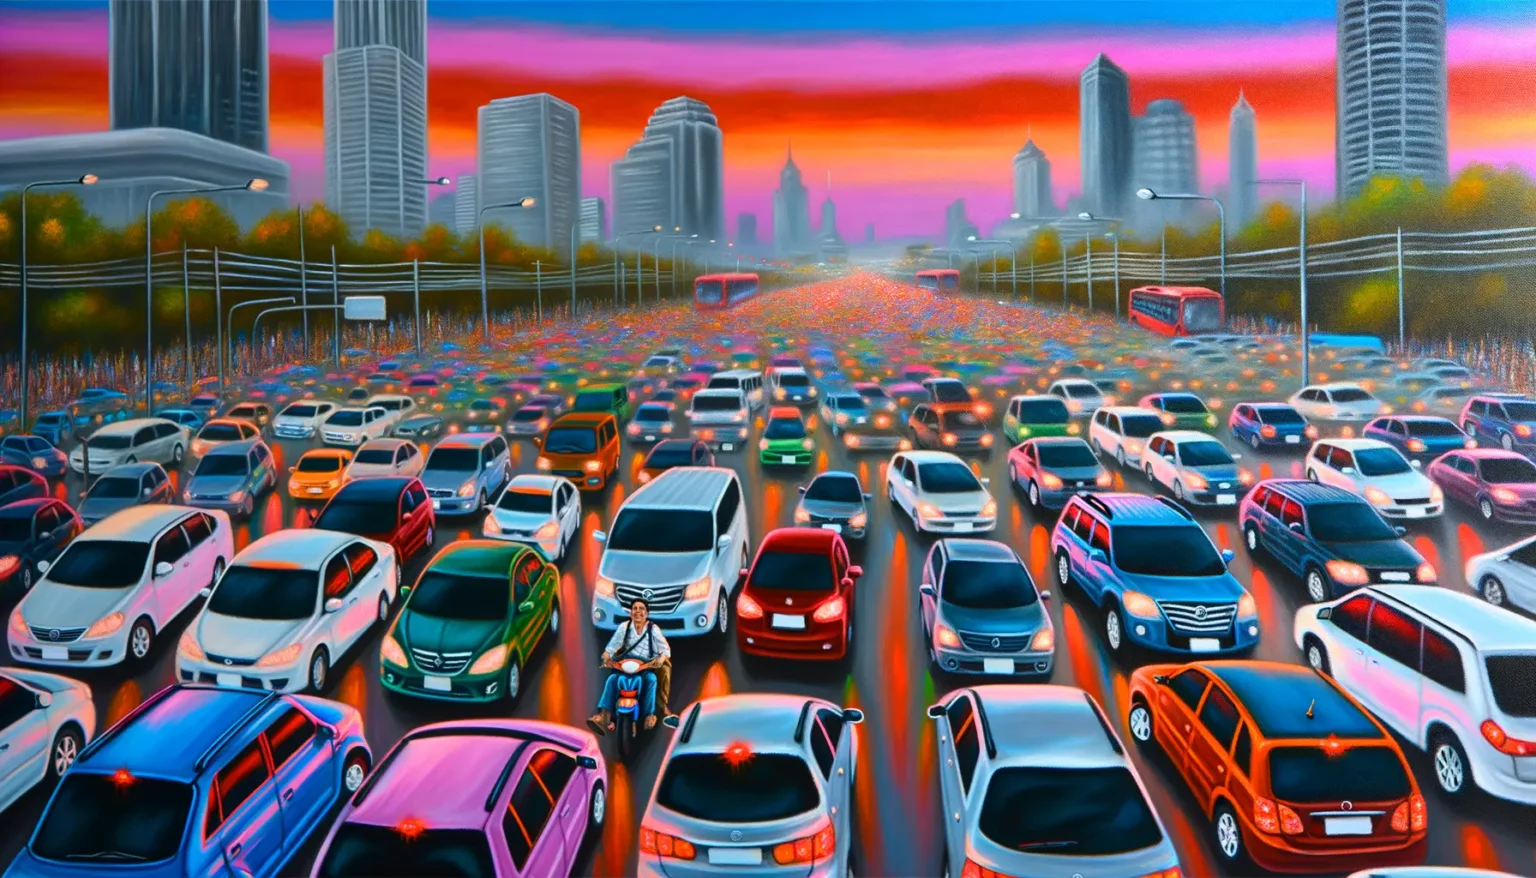 Eine belebte städtische Straße mit dichtem Verkehr, zahlreiche bunte Autos stehen dicht an dicht auf mehreren Fahrspuren. Im Vordergrund fährt eine Person auf einem Motorroller zwischen den Autos. Im Hintergrund zeichnet sich eine Skyline mit Wolkenkratzern ab, über der ein dramatischer, farbintensiver Sonnenuntergang mit roten und blauen Tönen den Himmel erleuchtet.